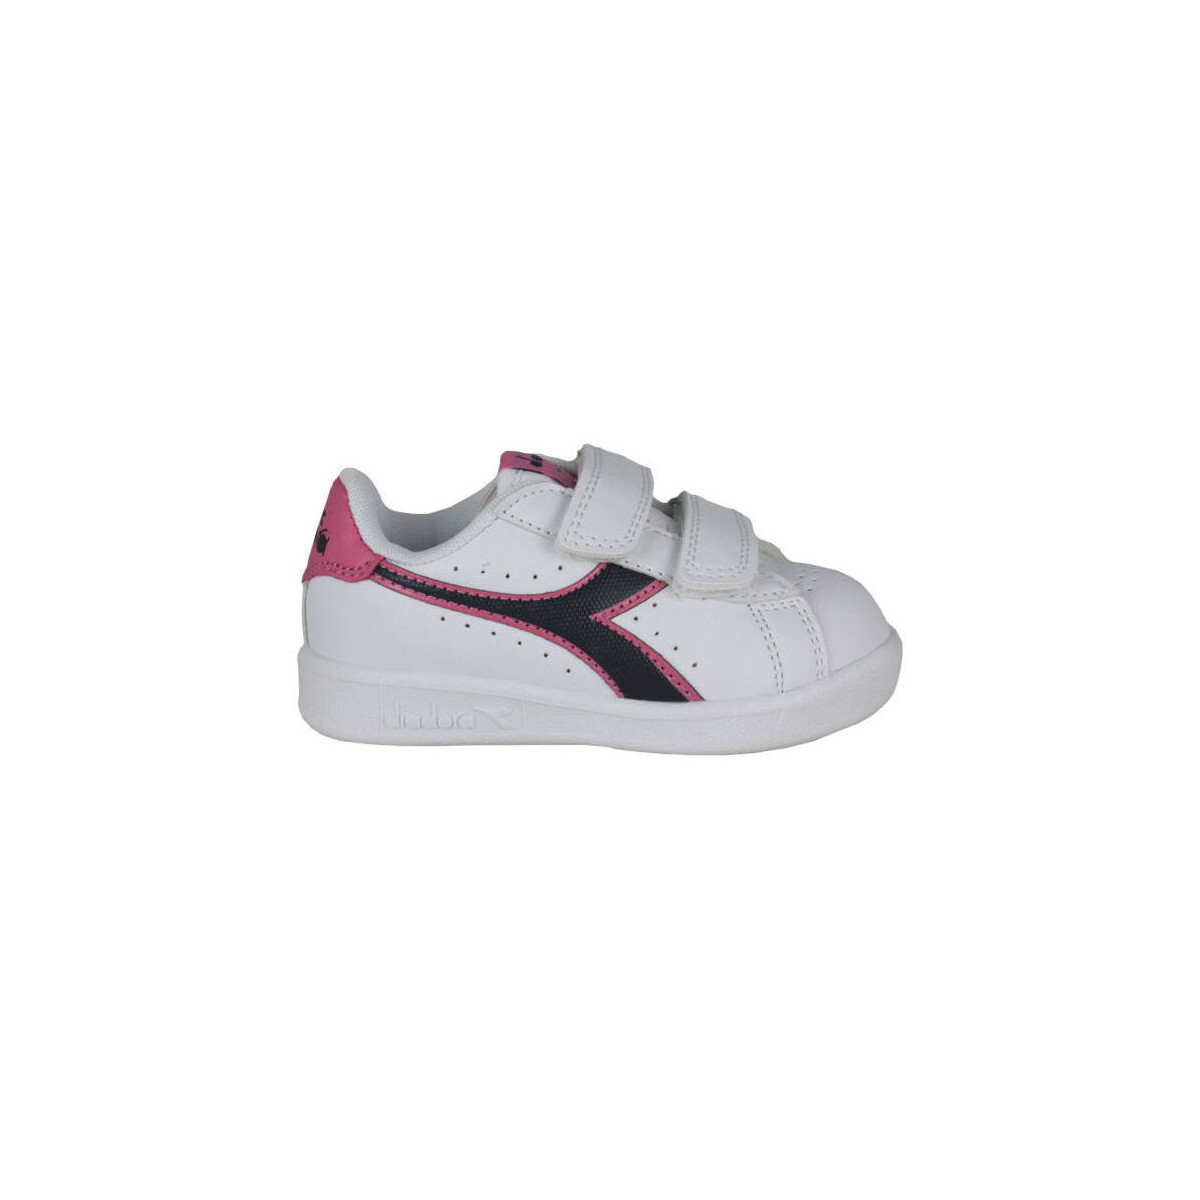 Diadora  Sneakers Diadora 101.173339 01 C8593 White/Black iris/Pink pas